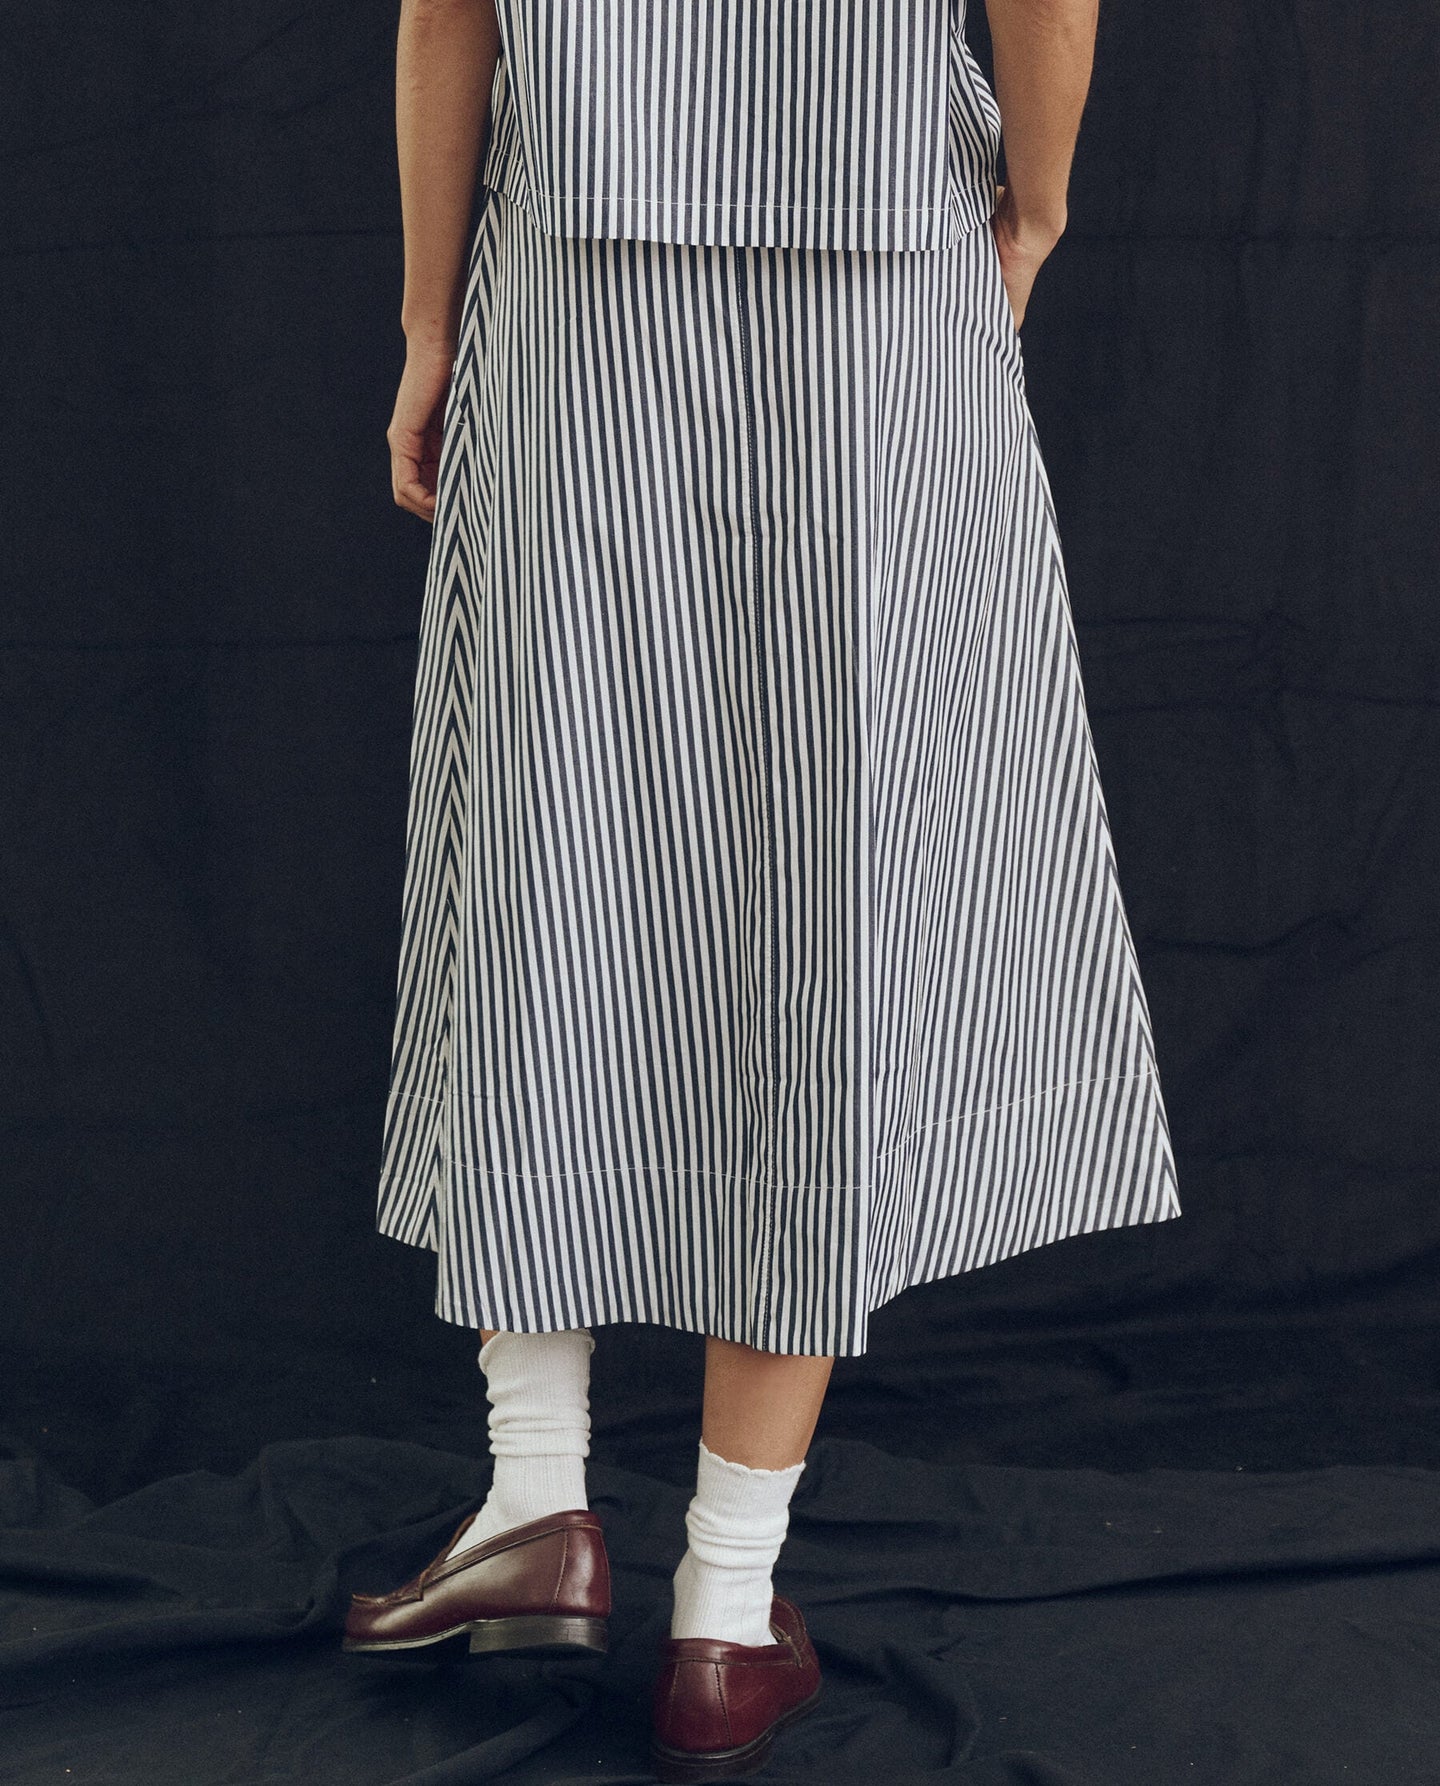 Skirt K099877 Field Skirt Navy-Studio-Stripe